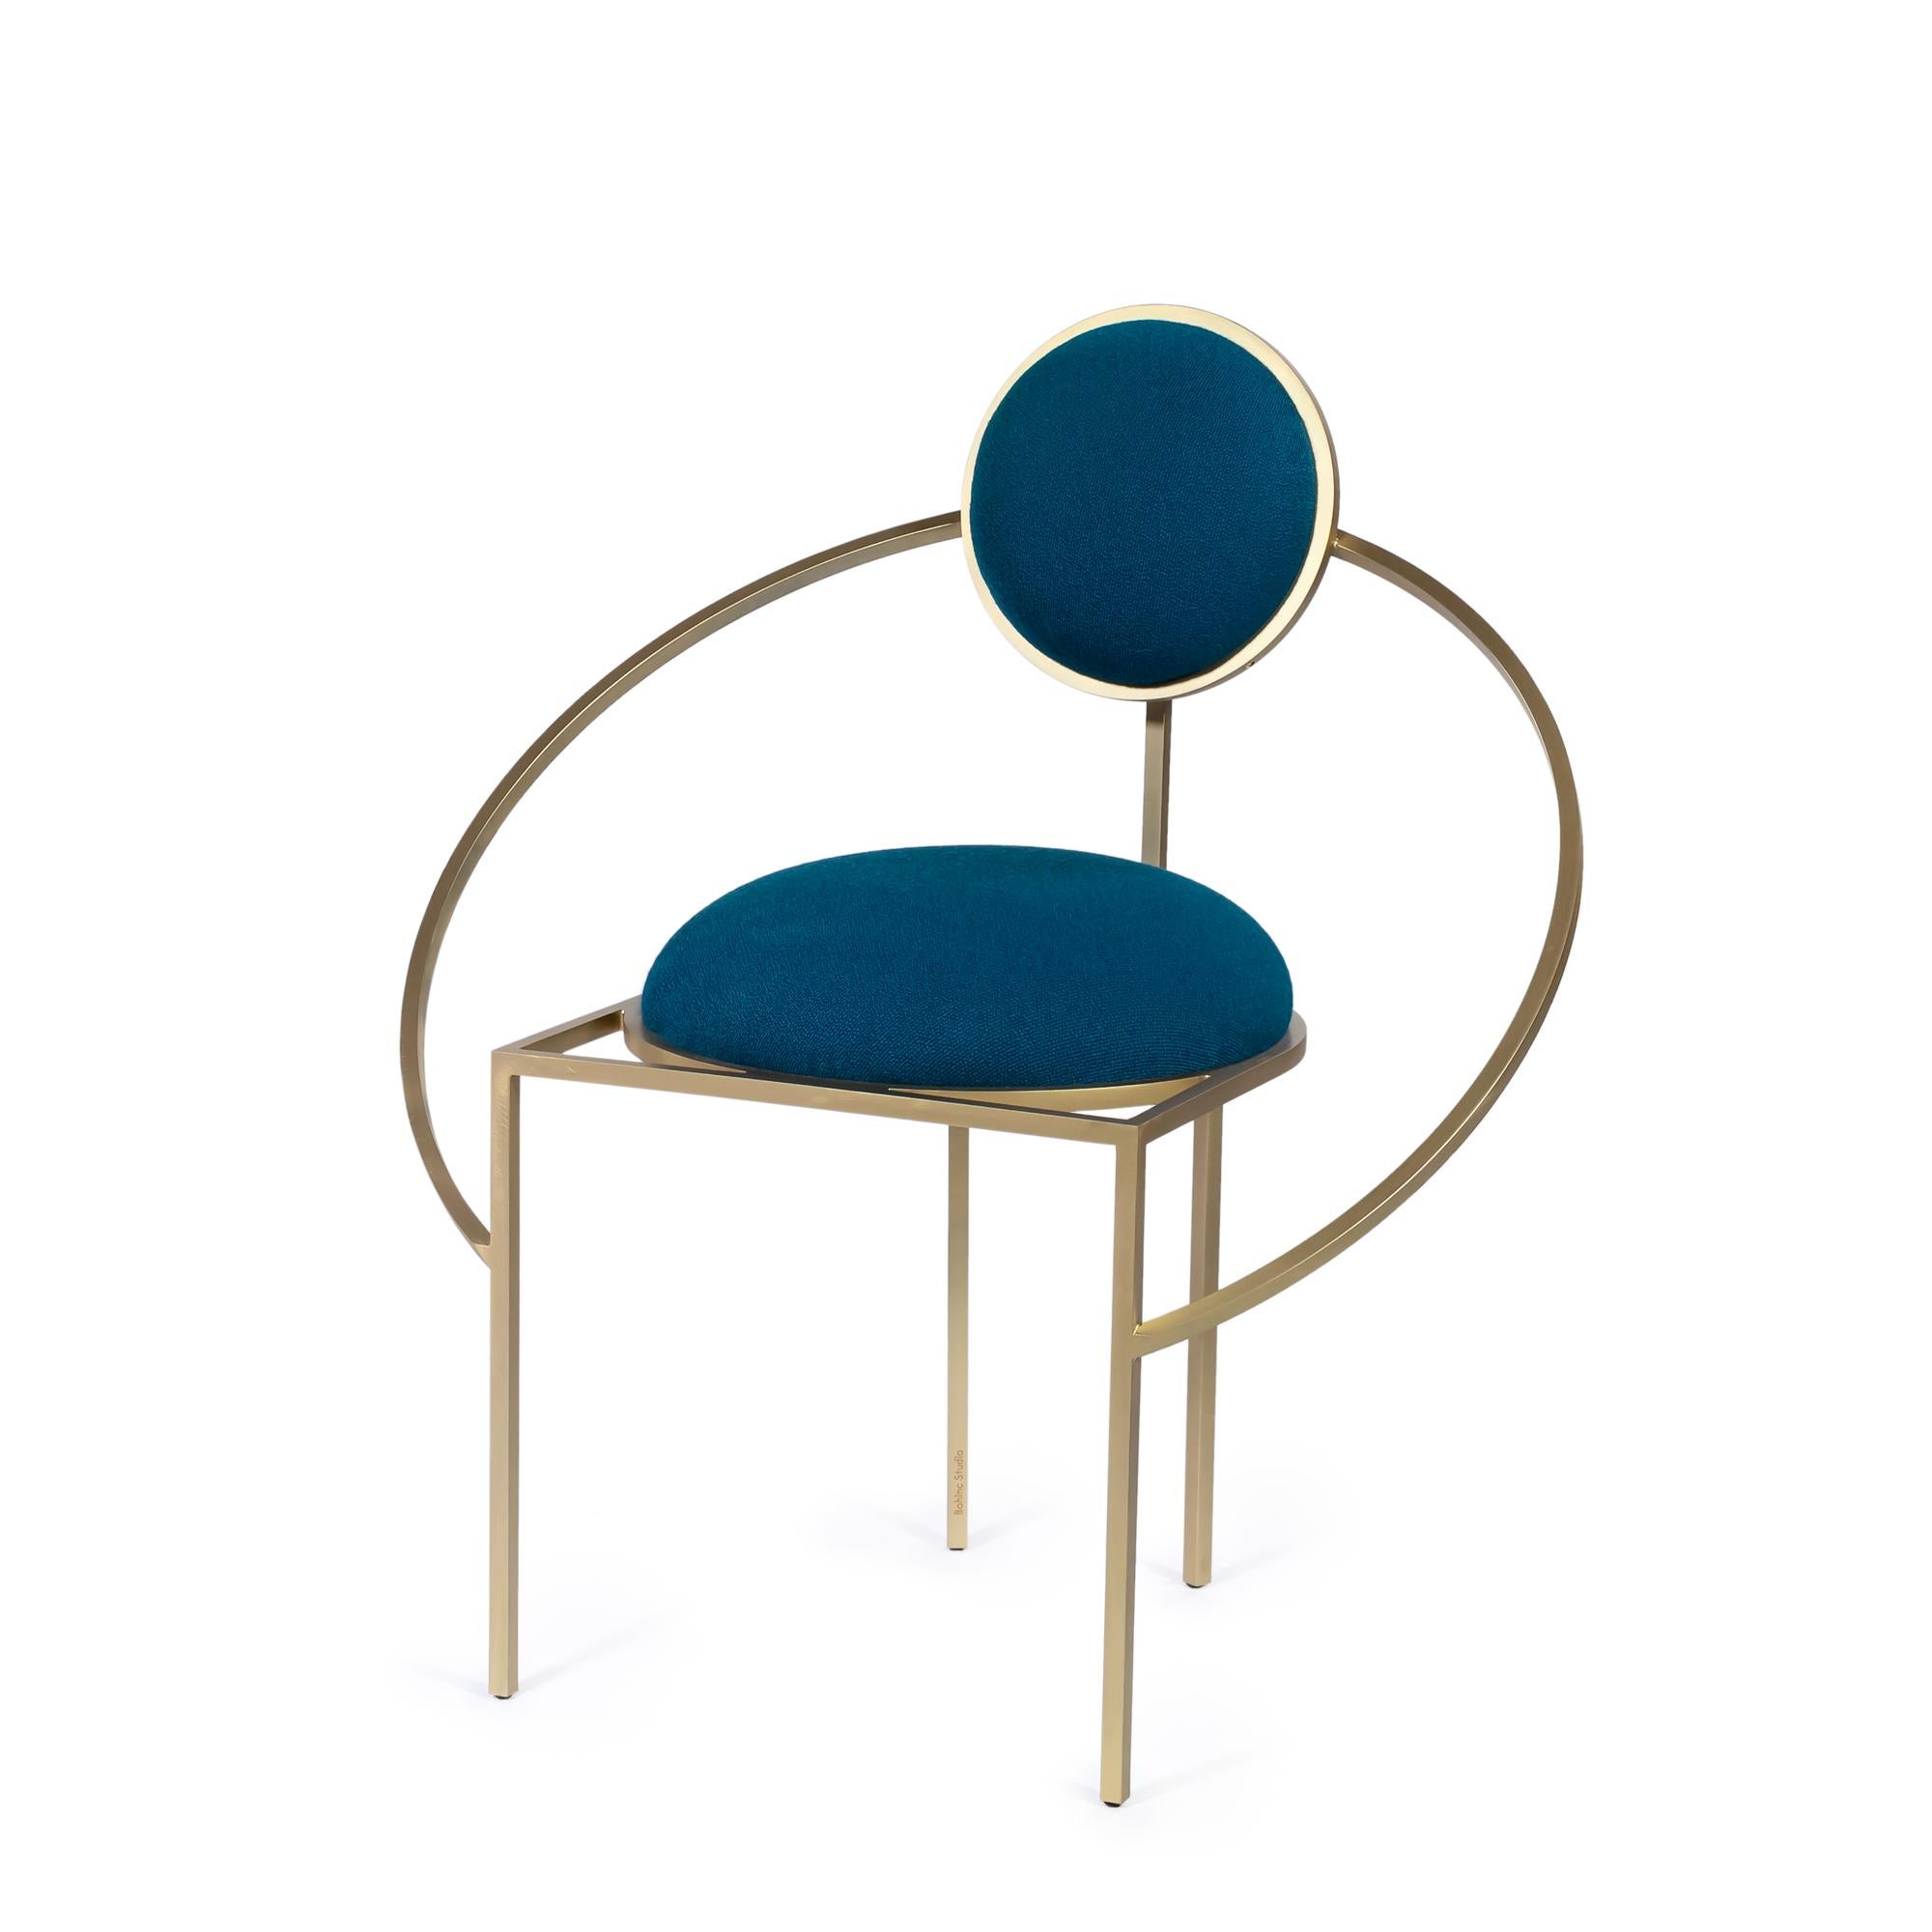 Dies ist das erste Mal, dass sich Bohinc mit einem Design-Favoriten beschäftigt: dem Stuhl.

In der Kollektion entwickelt Lara Bohinc ihre Sternmotive weiter, indem sie sich von Planeten- und Mondbahnen inspirieren lässt, deren gravitationsbedingt